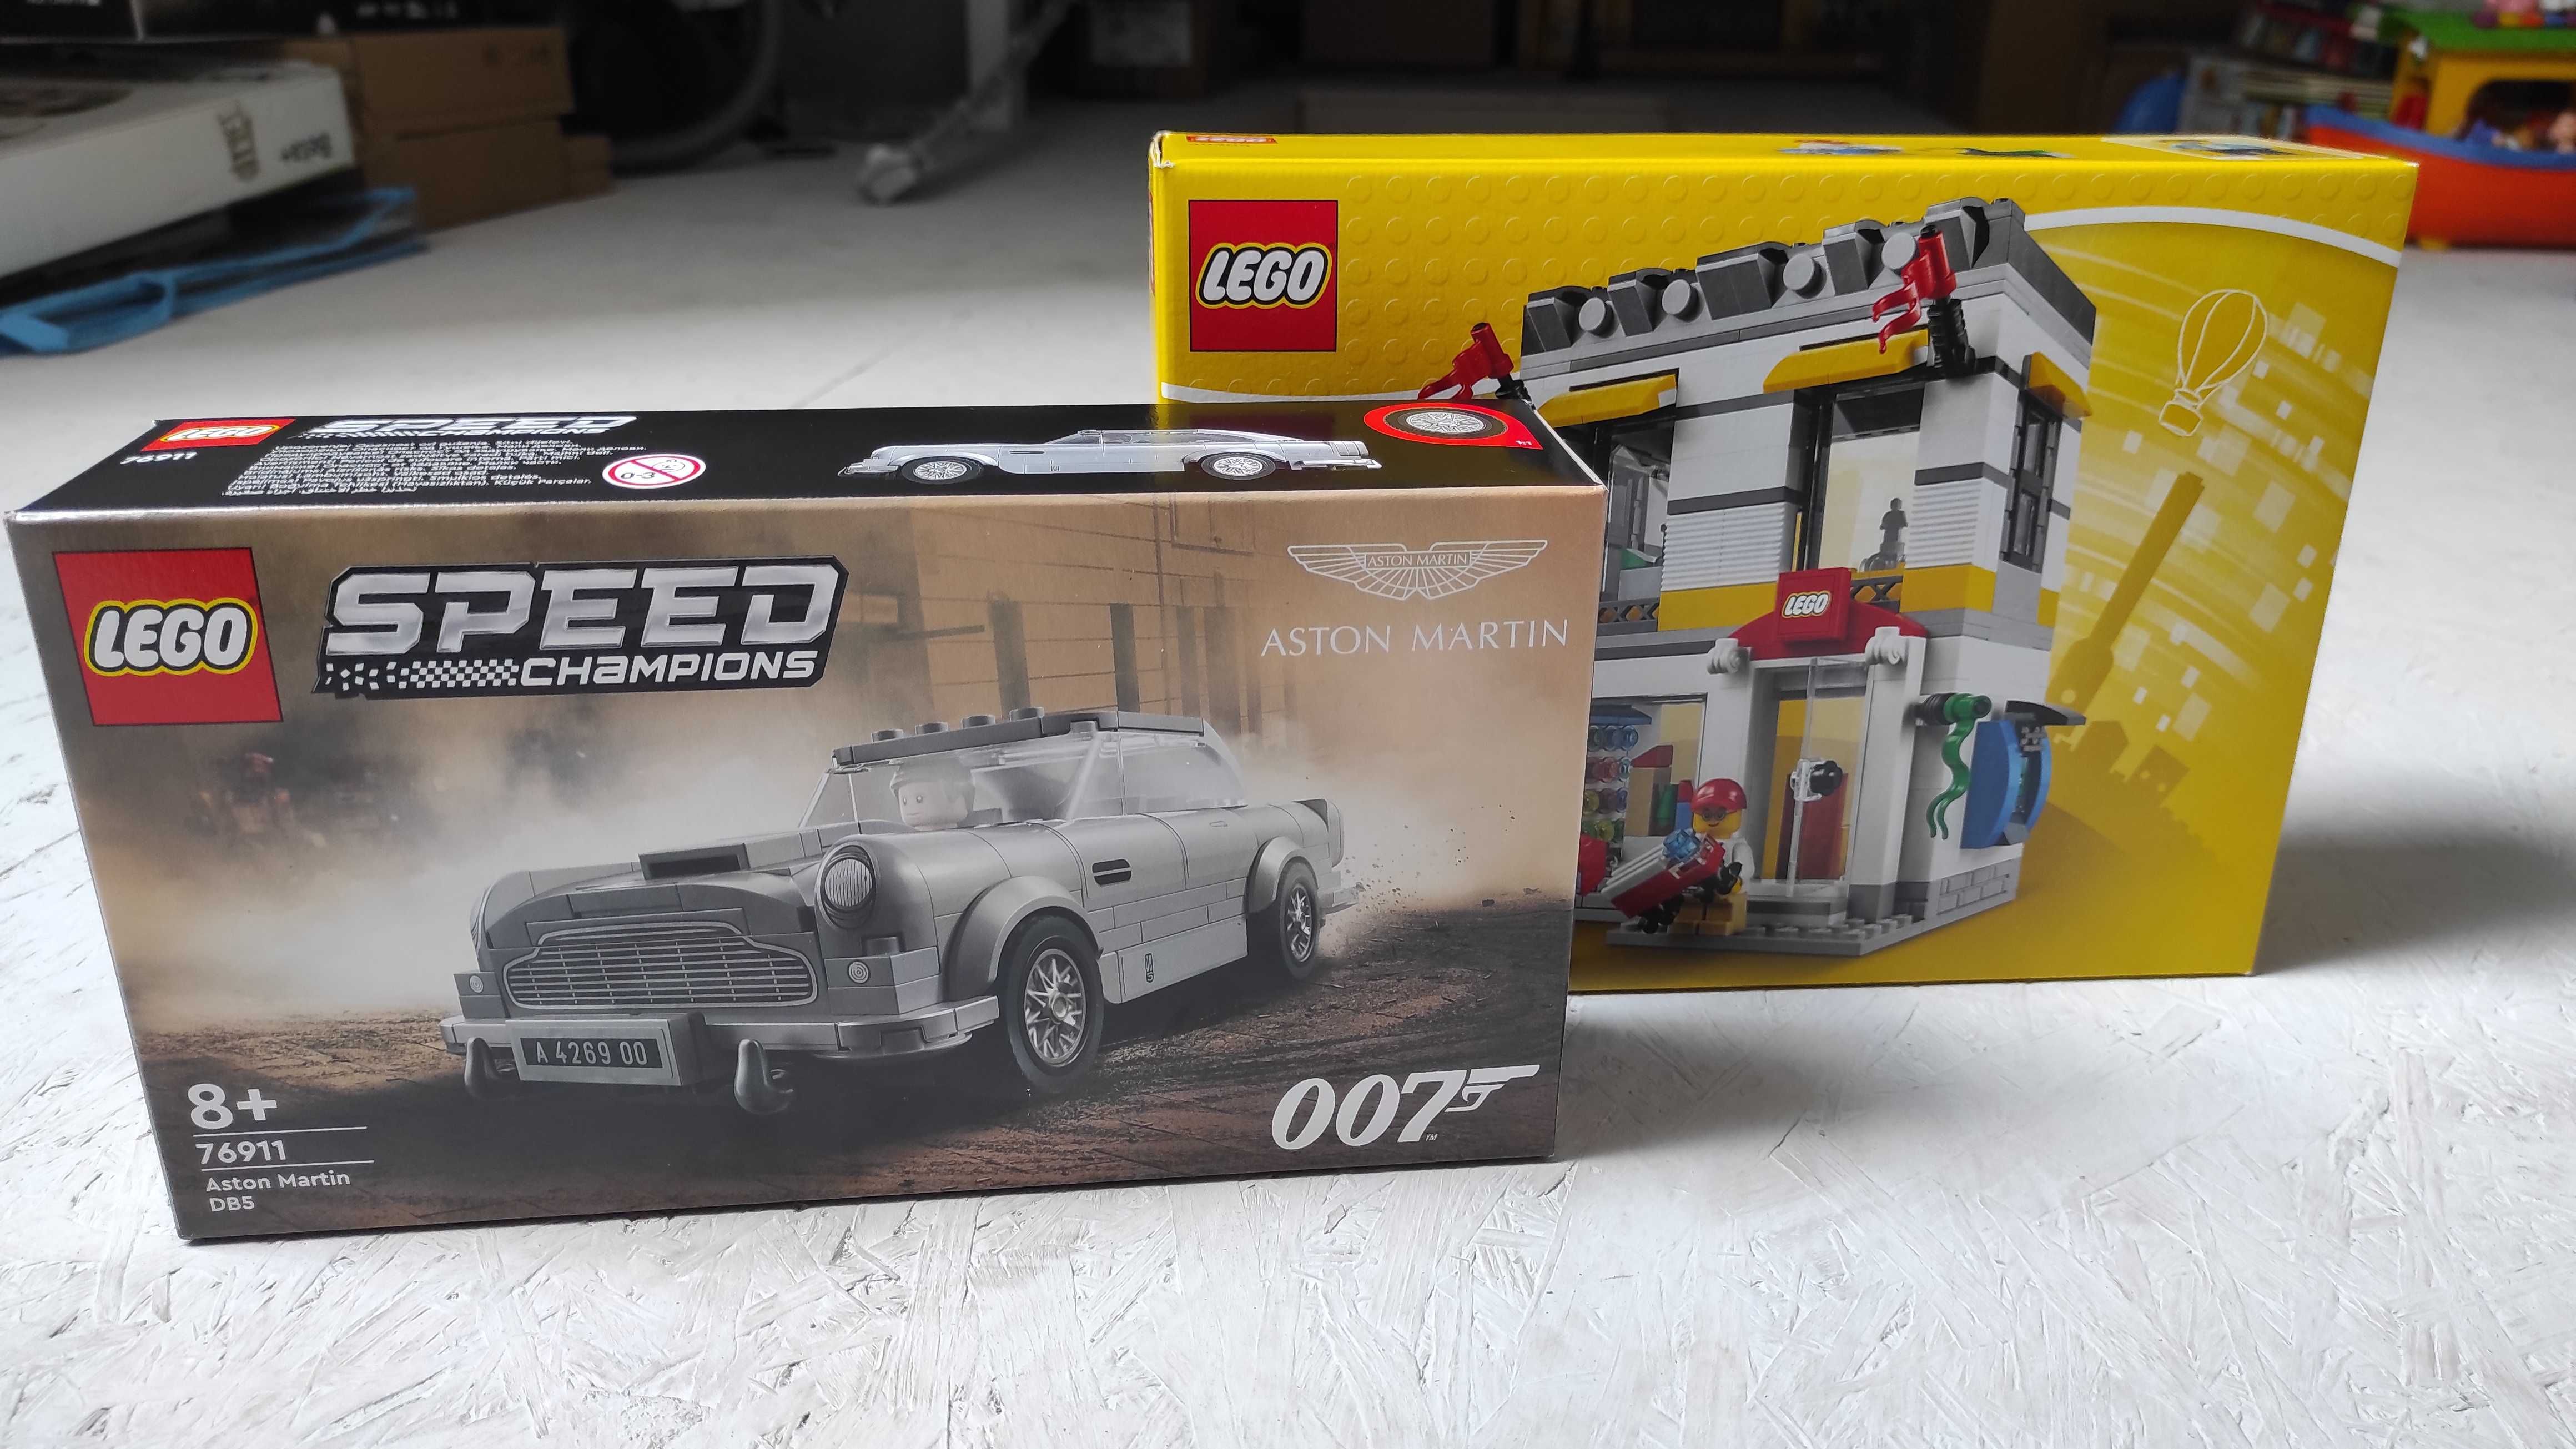 LEGO 007 Aston Martin DB5 + LEGO 40305 Sklep firmowy w mikroskali